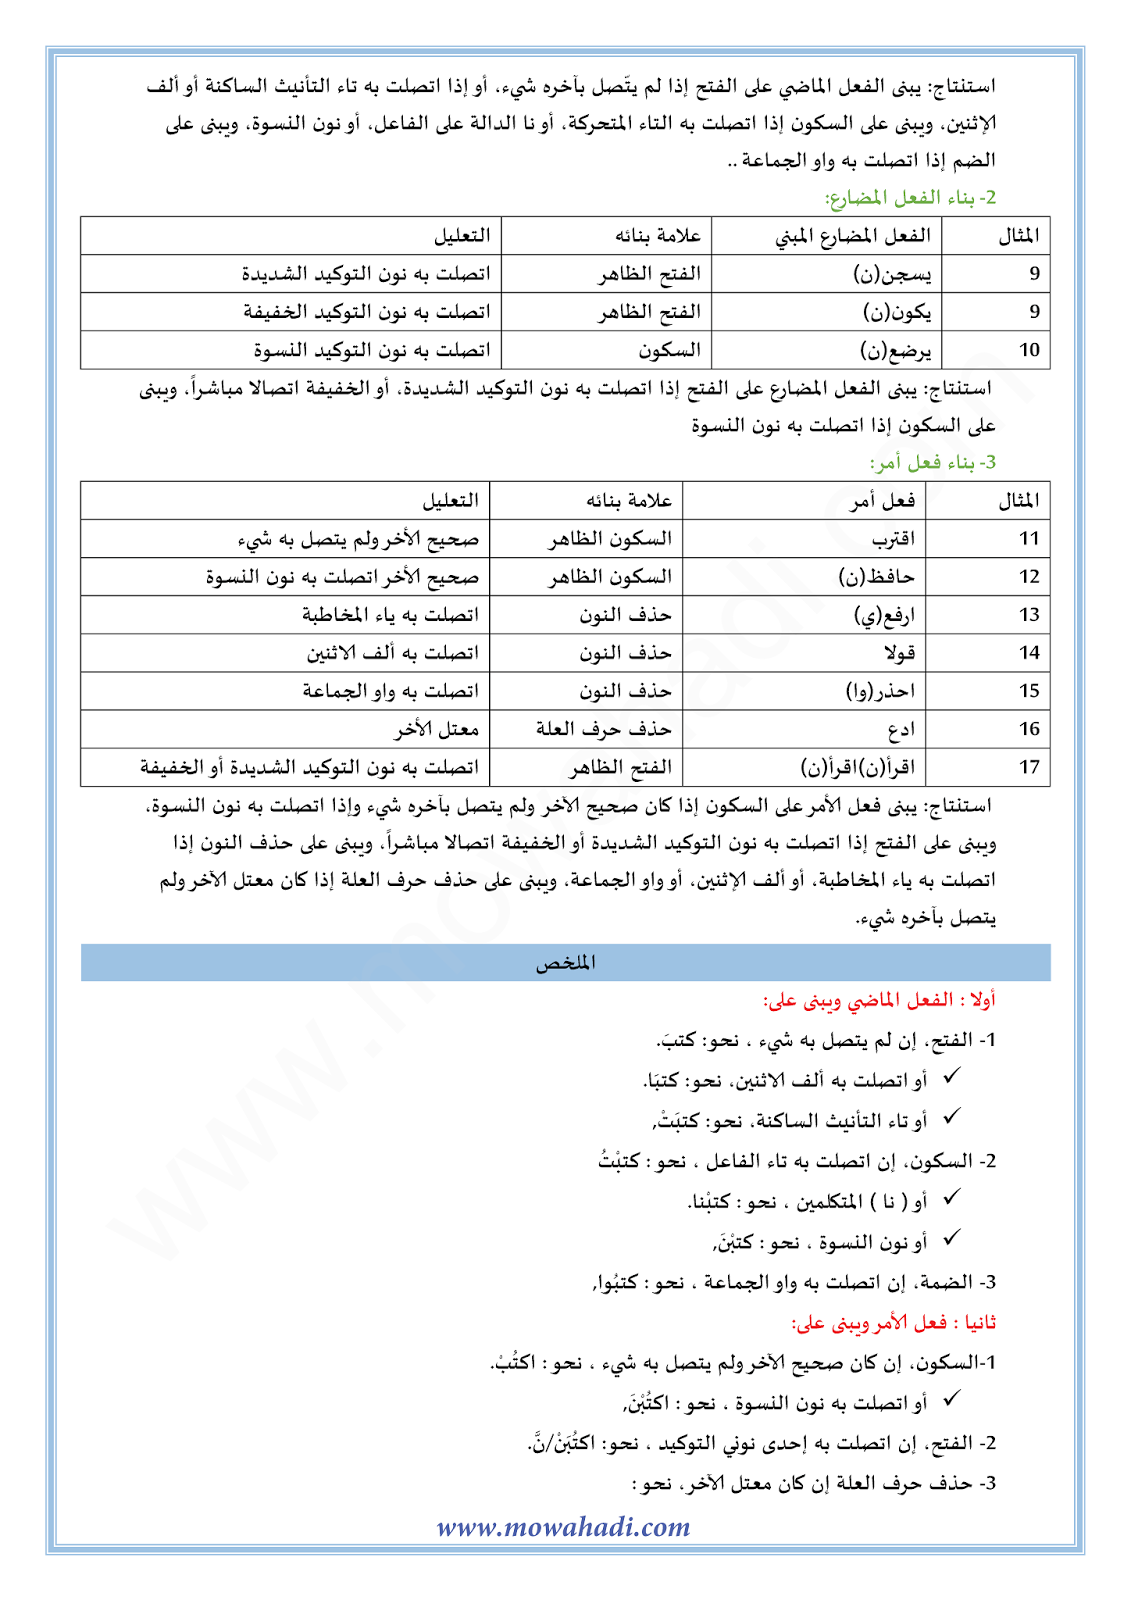 الدرس اللغوي علامات البناء في الأفعال للسنة الأولى اعدادي في مادة اللغة العربية 9-cours-dars-loghawi1_002